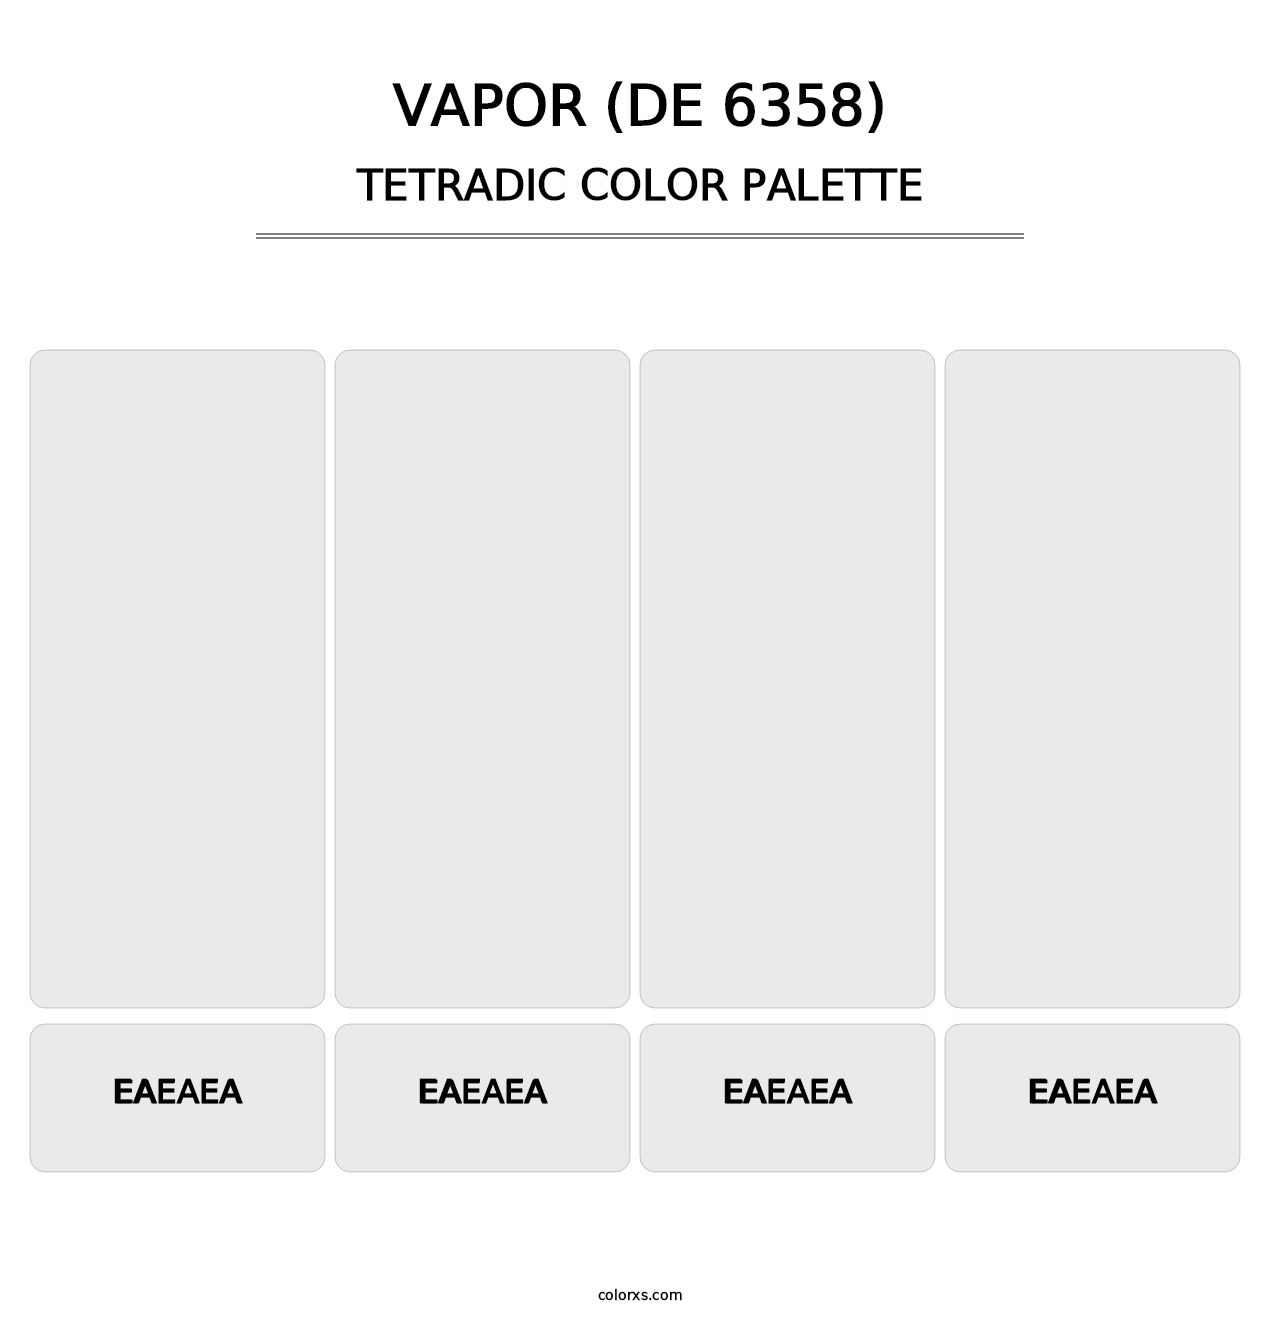 Vapor (DE 6358) - Tetradic Color Palette